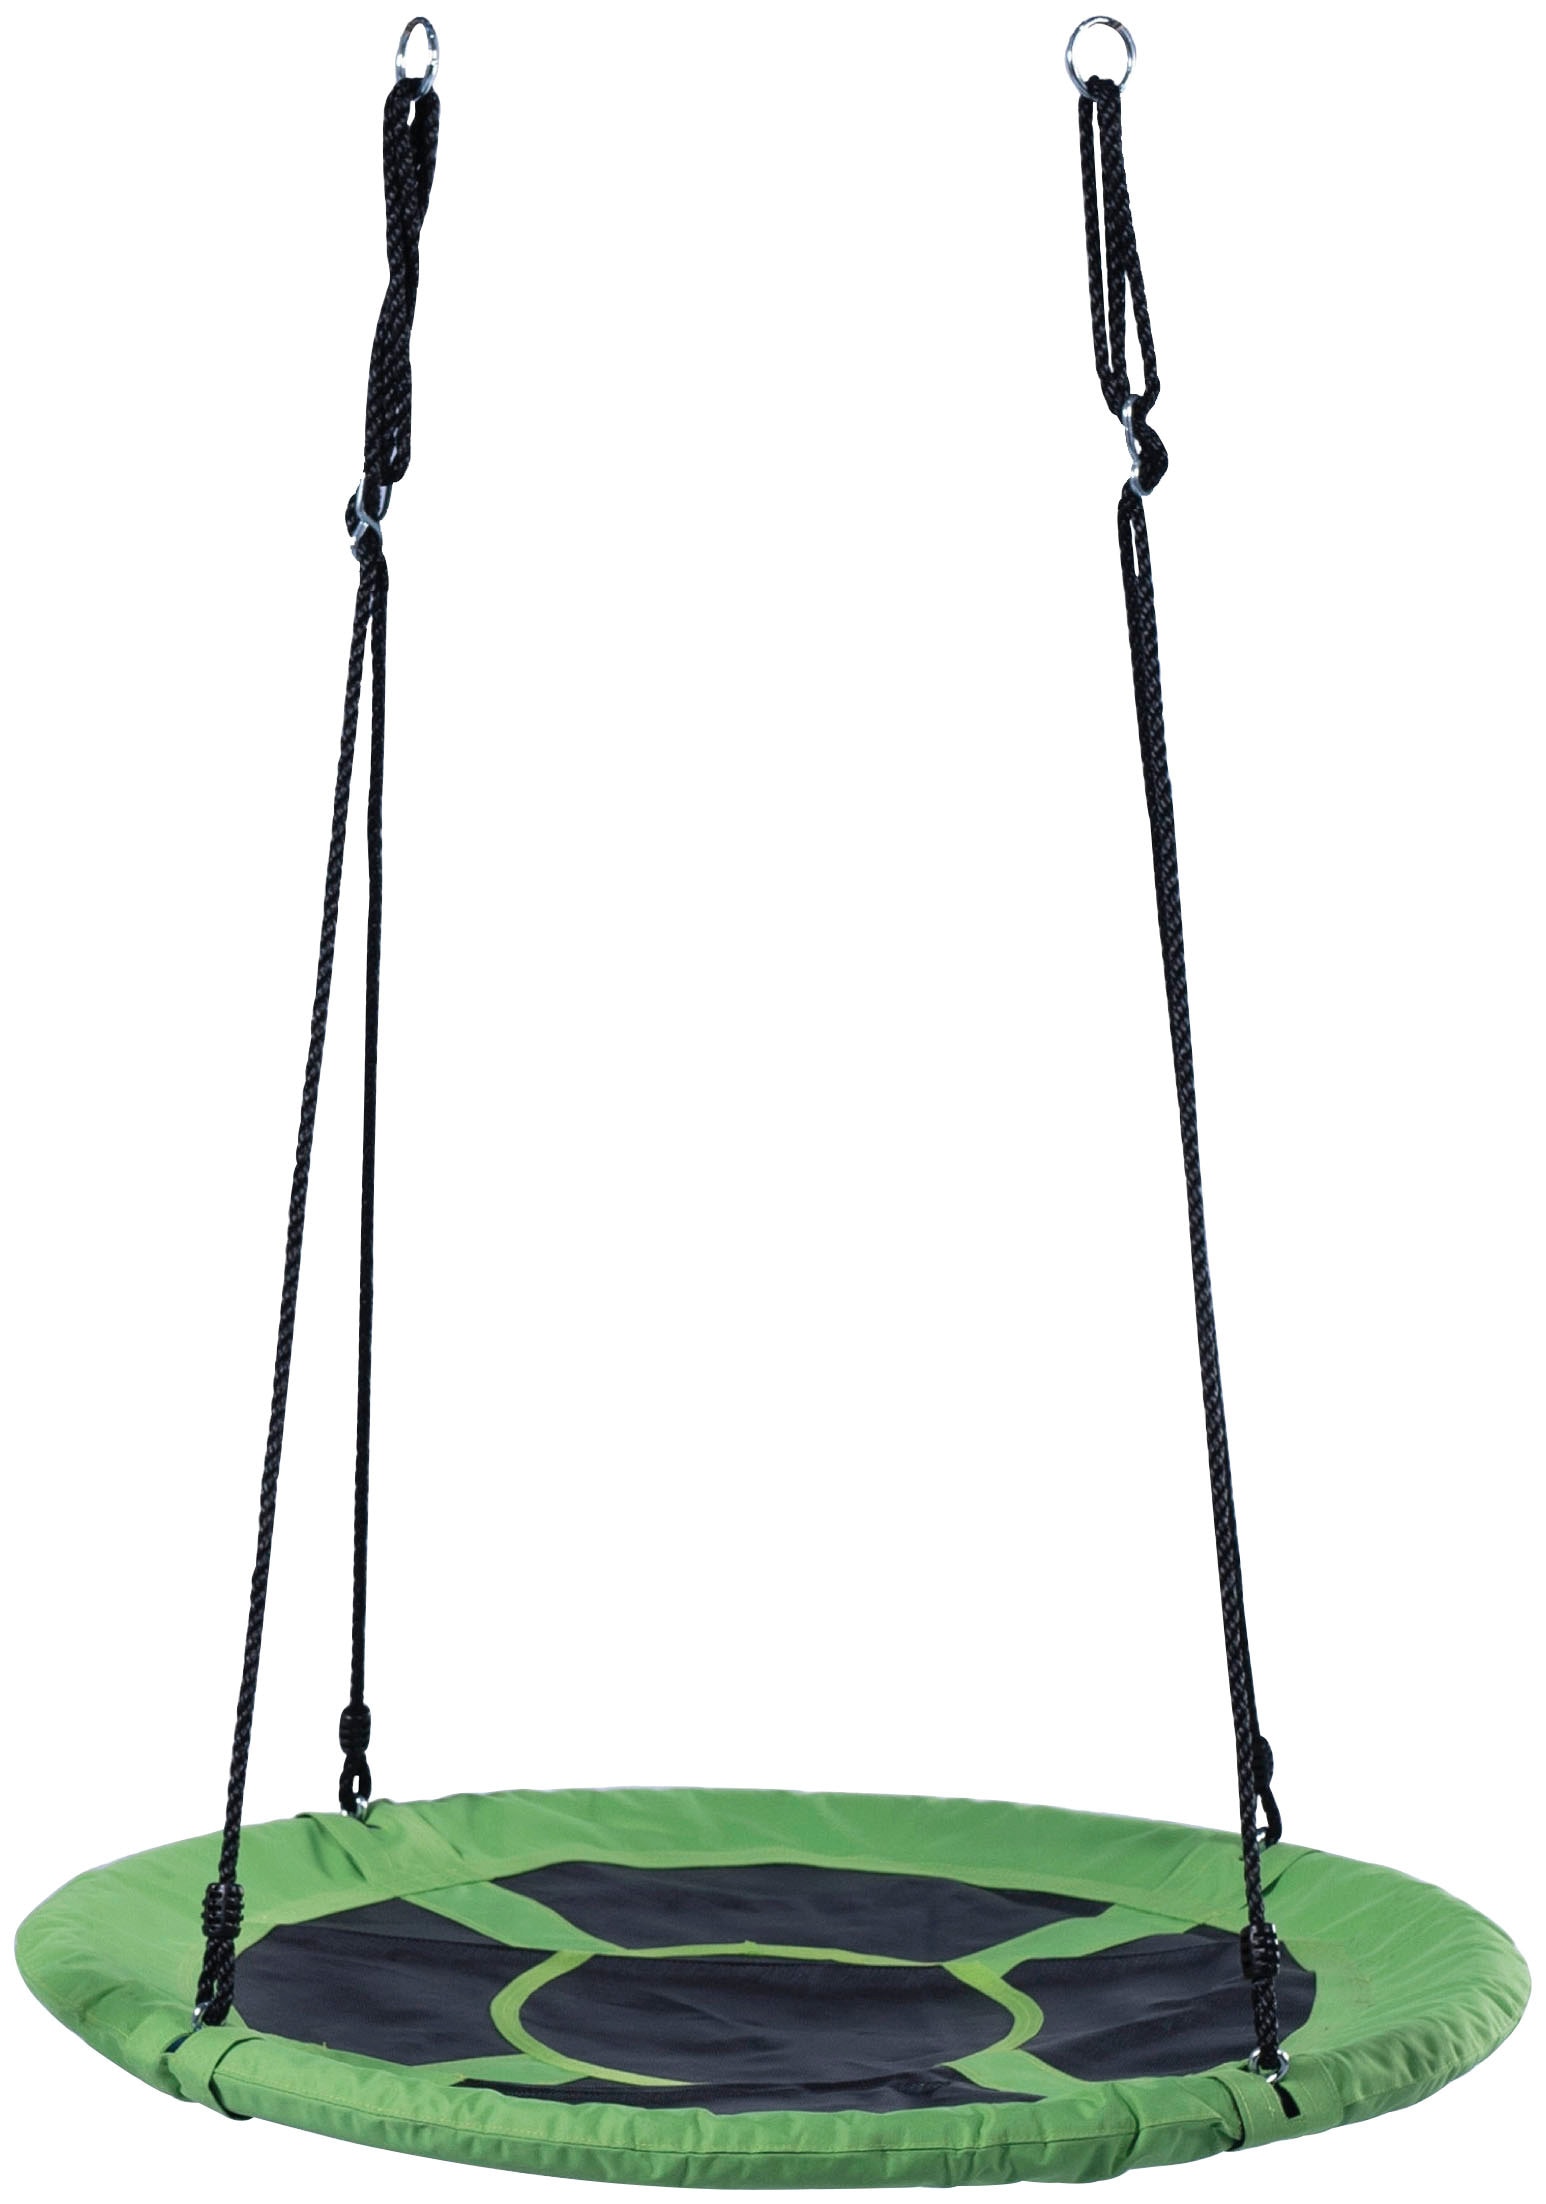 Nestschaukel-Sitz, 100 cm Ø, grün, max. Belastbarkeit: 150 kg